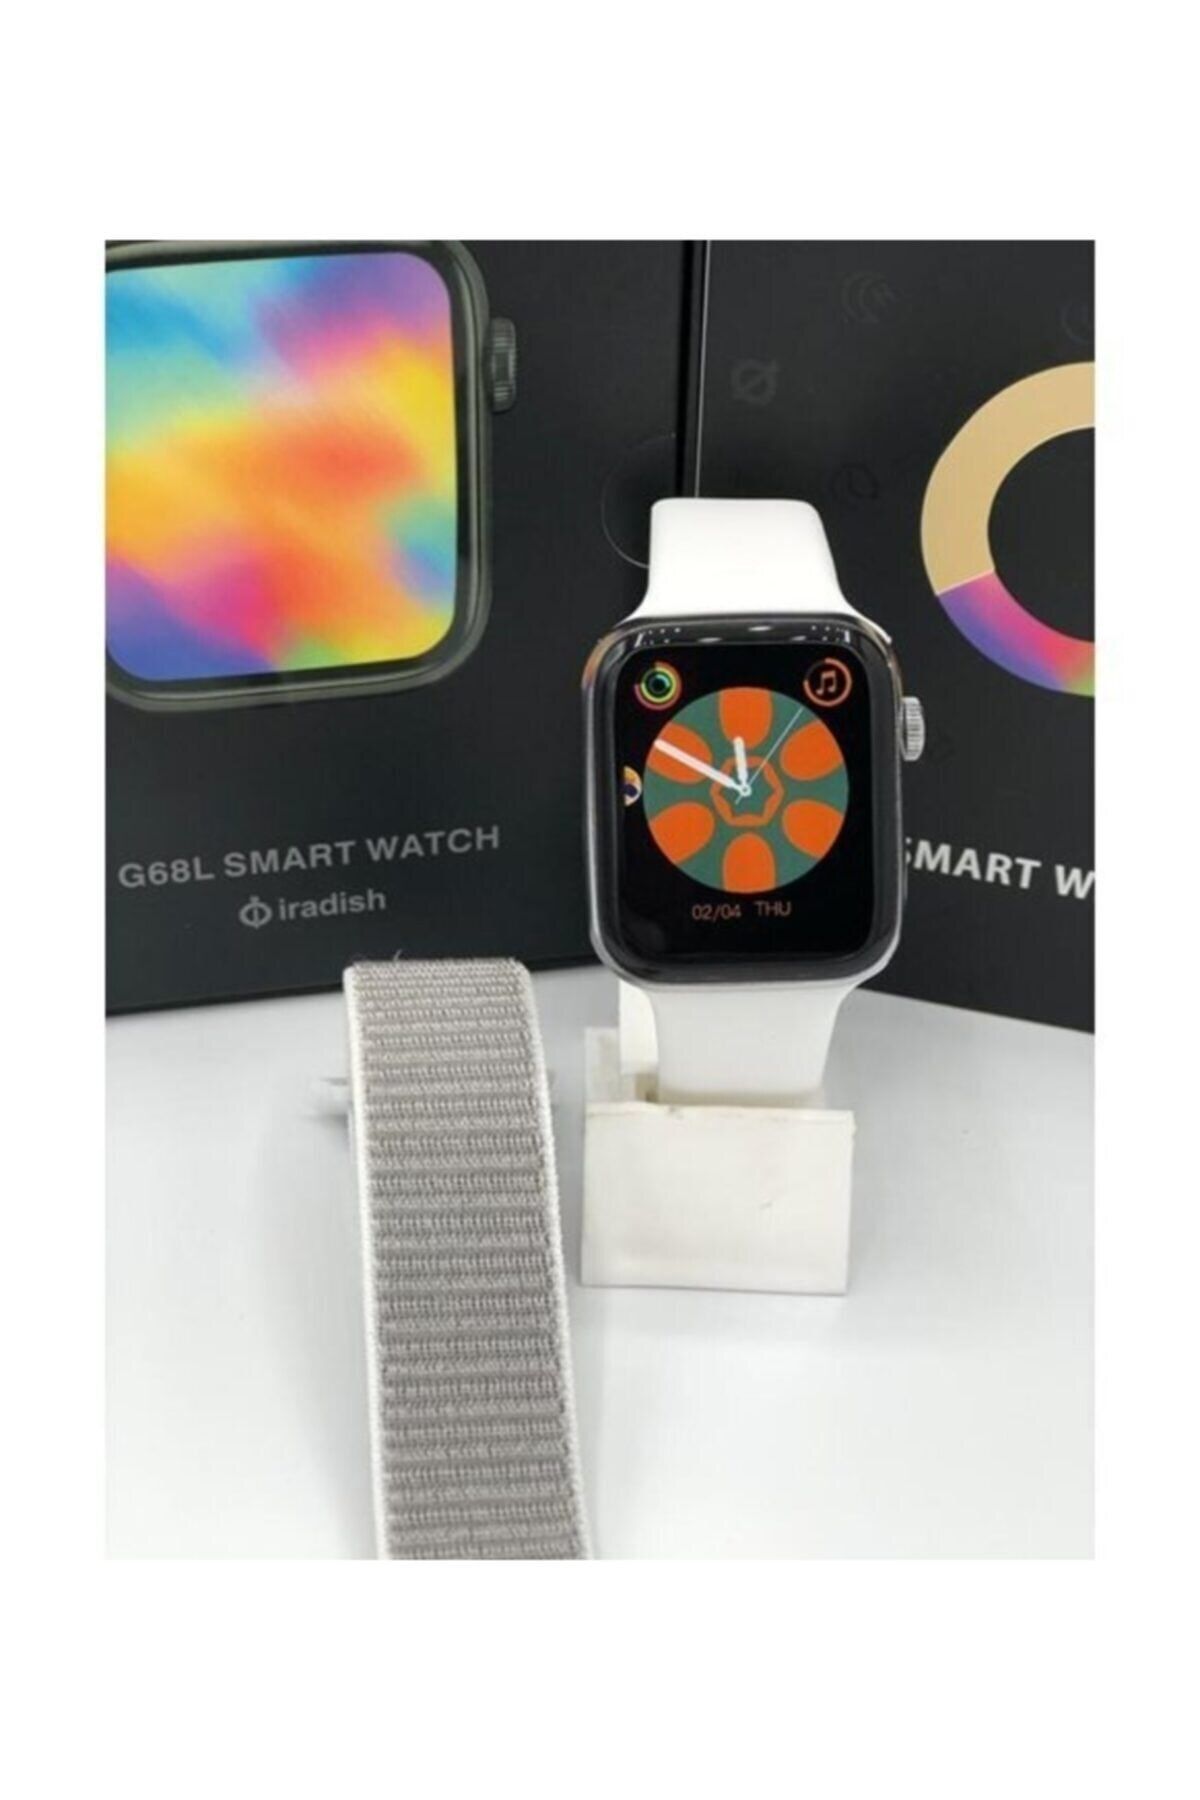 EMORES G68l Smart Watch 6s Akıllı Saat Konuşma Özellikli Türkçe Menü Yan Tuşlar Aktif Uygulama